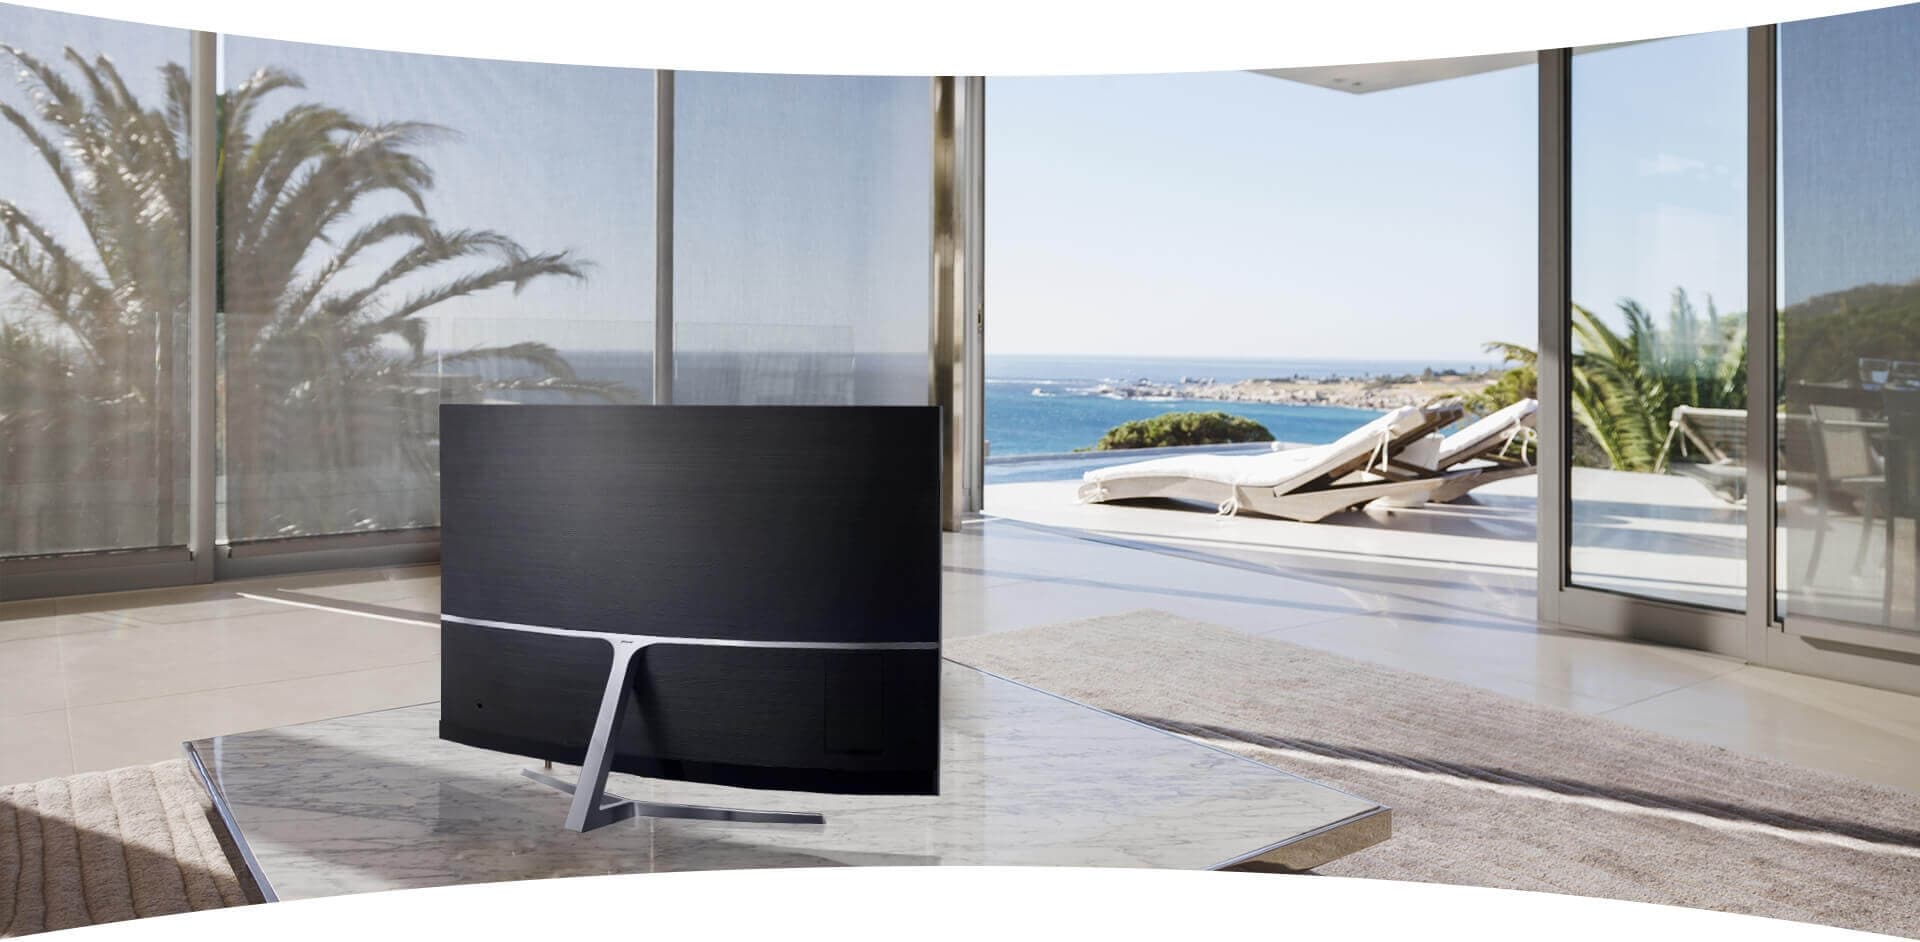 Un TV de Samsung en medio de una sala en la que aparece como un mueble destacado.